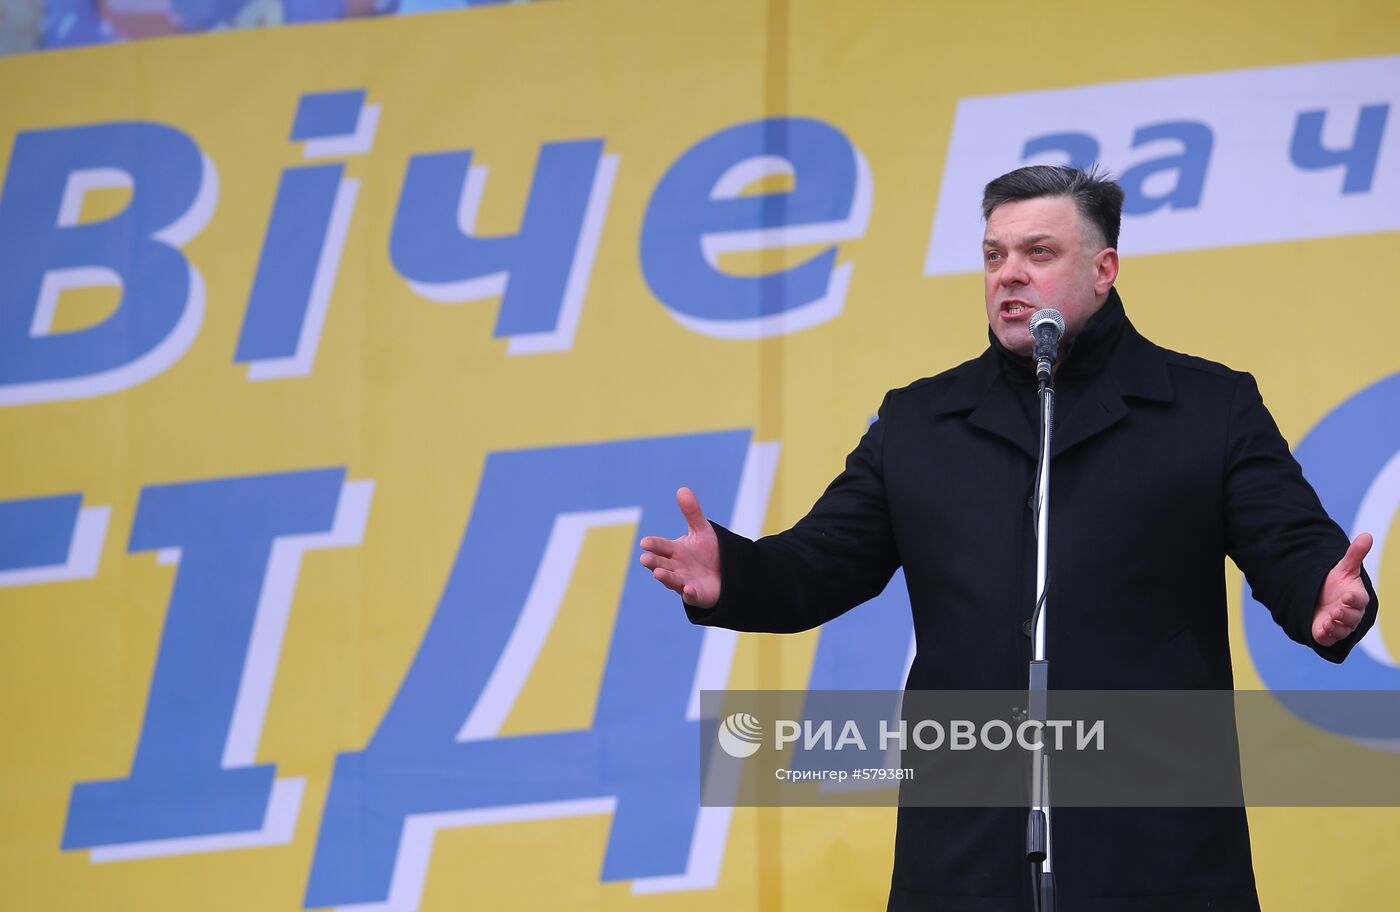 Акции в Киеве с требованием честных выборов